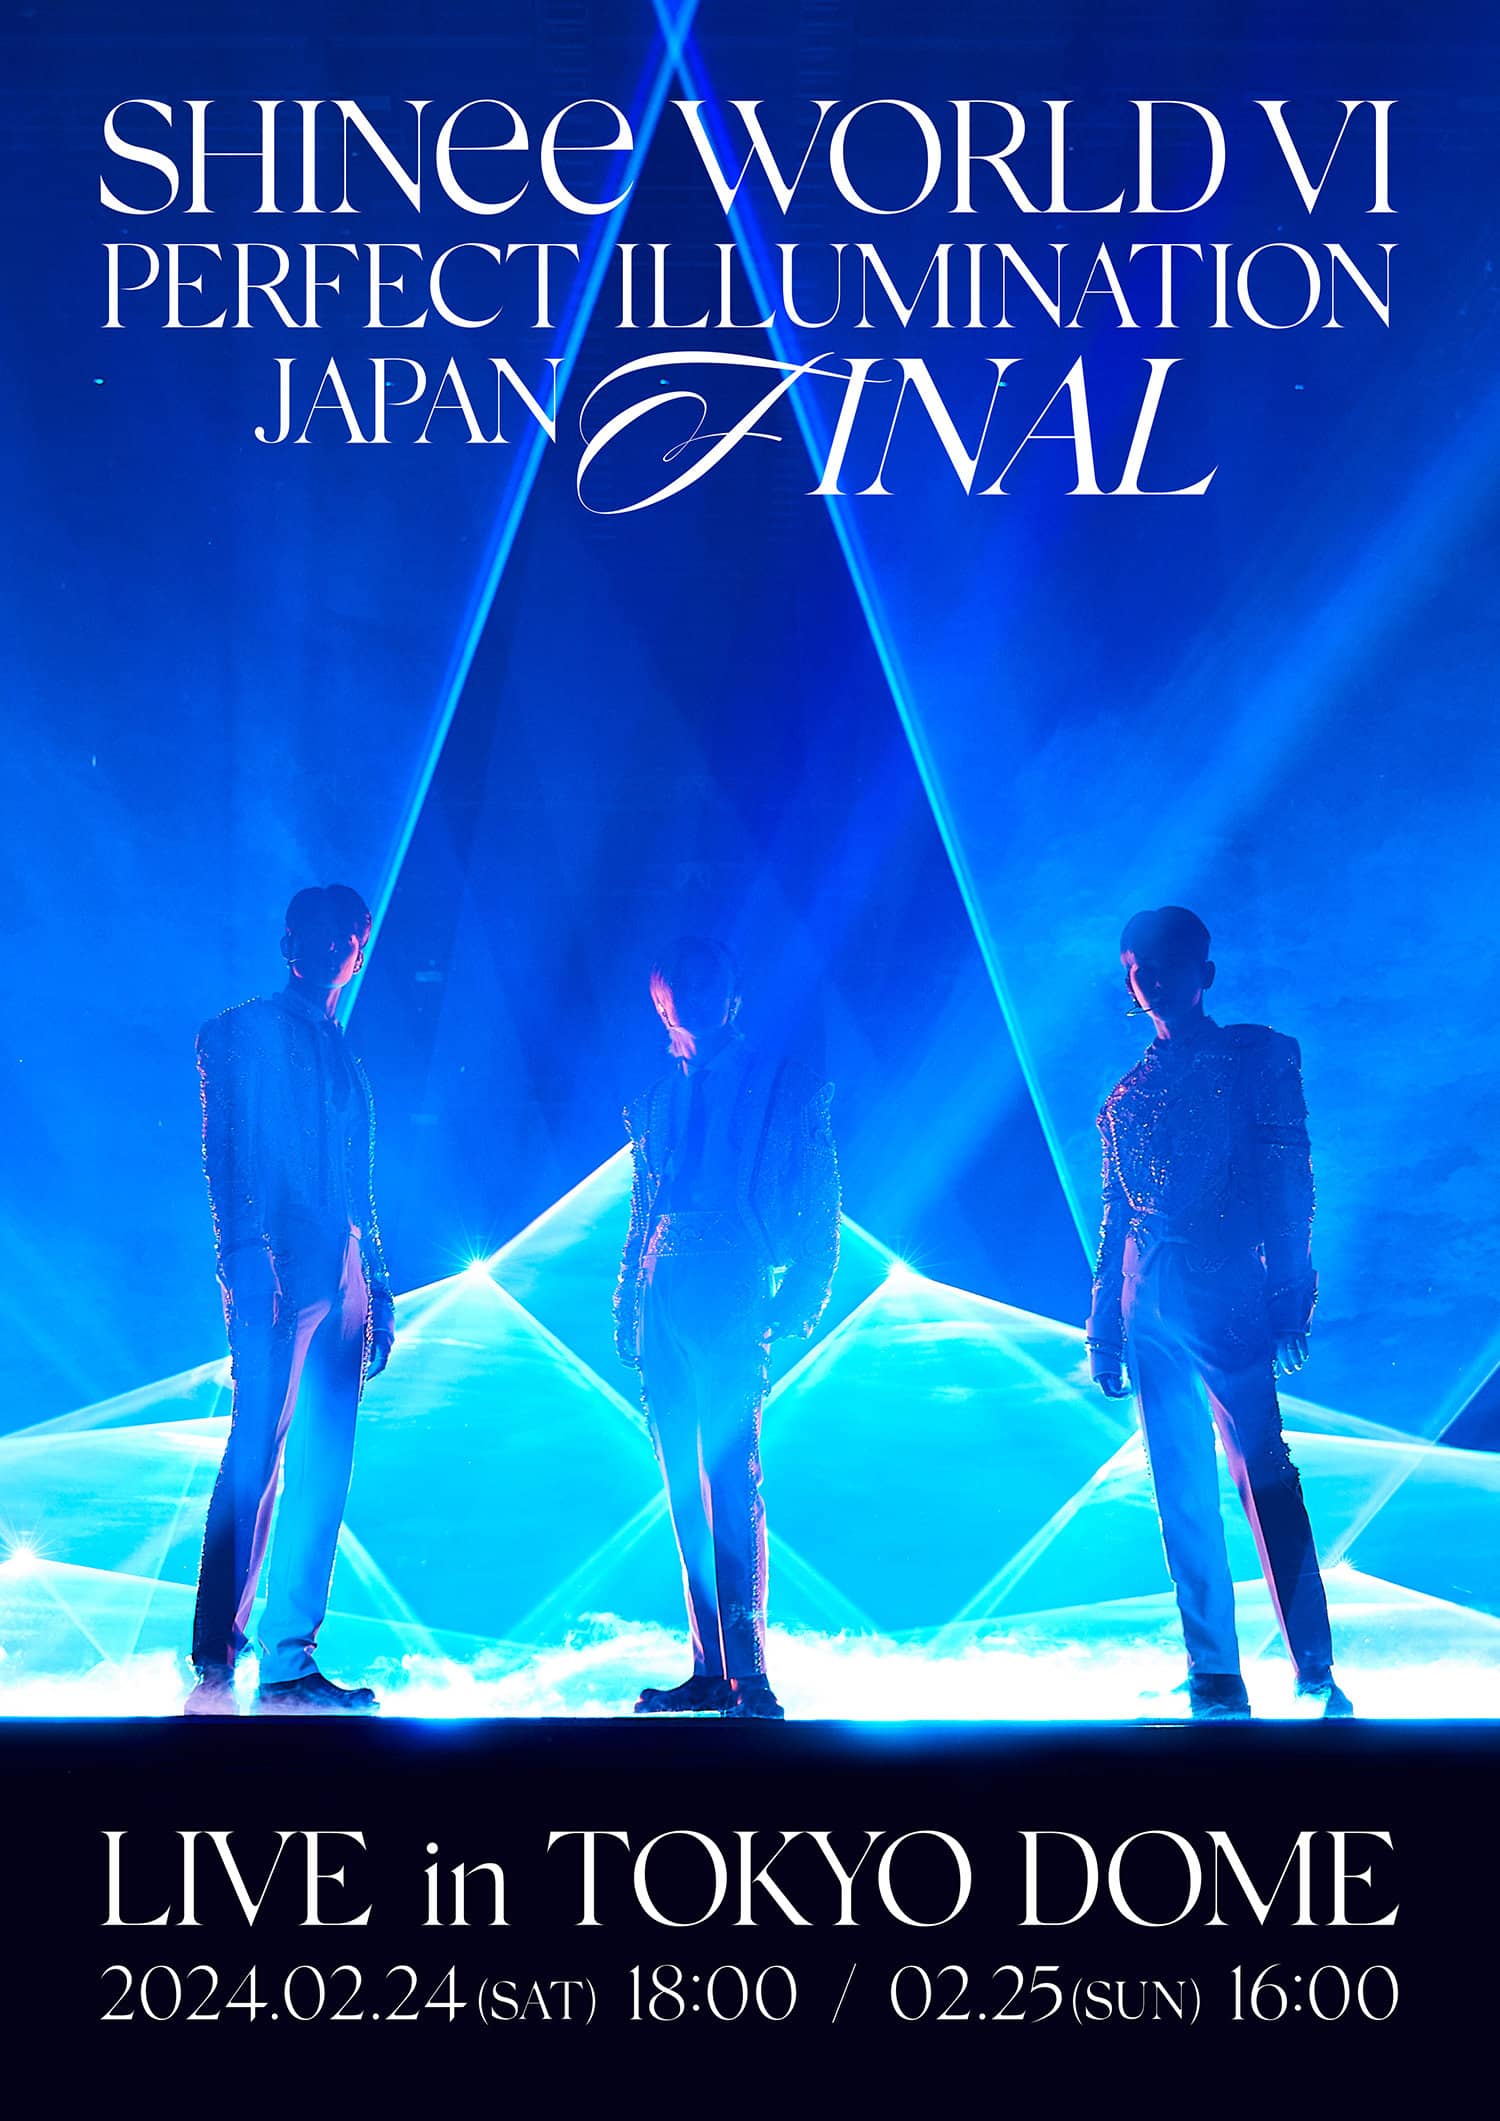 SHINee アリーナツアーのファイナルライブが東京ドームで開催決定！ PODA